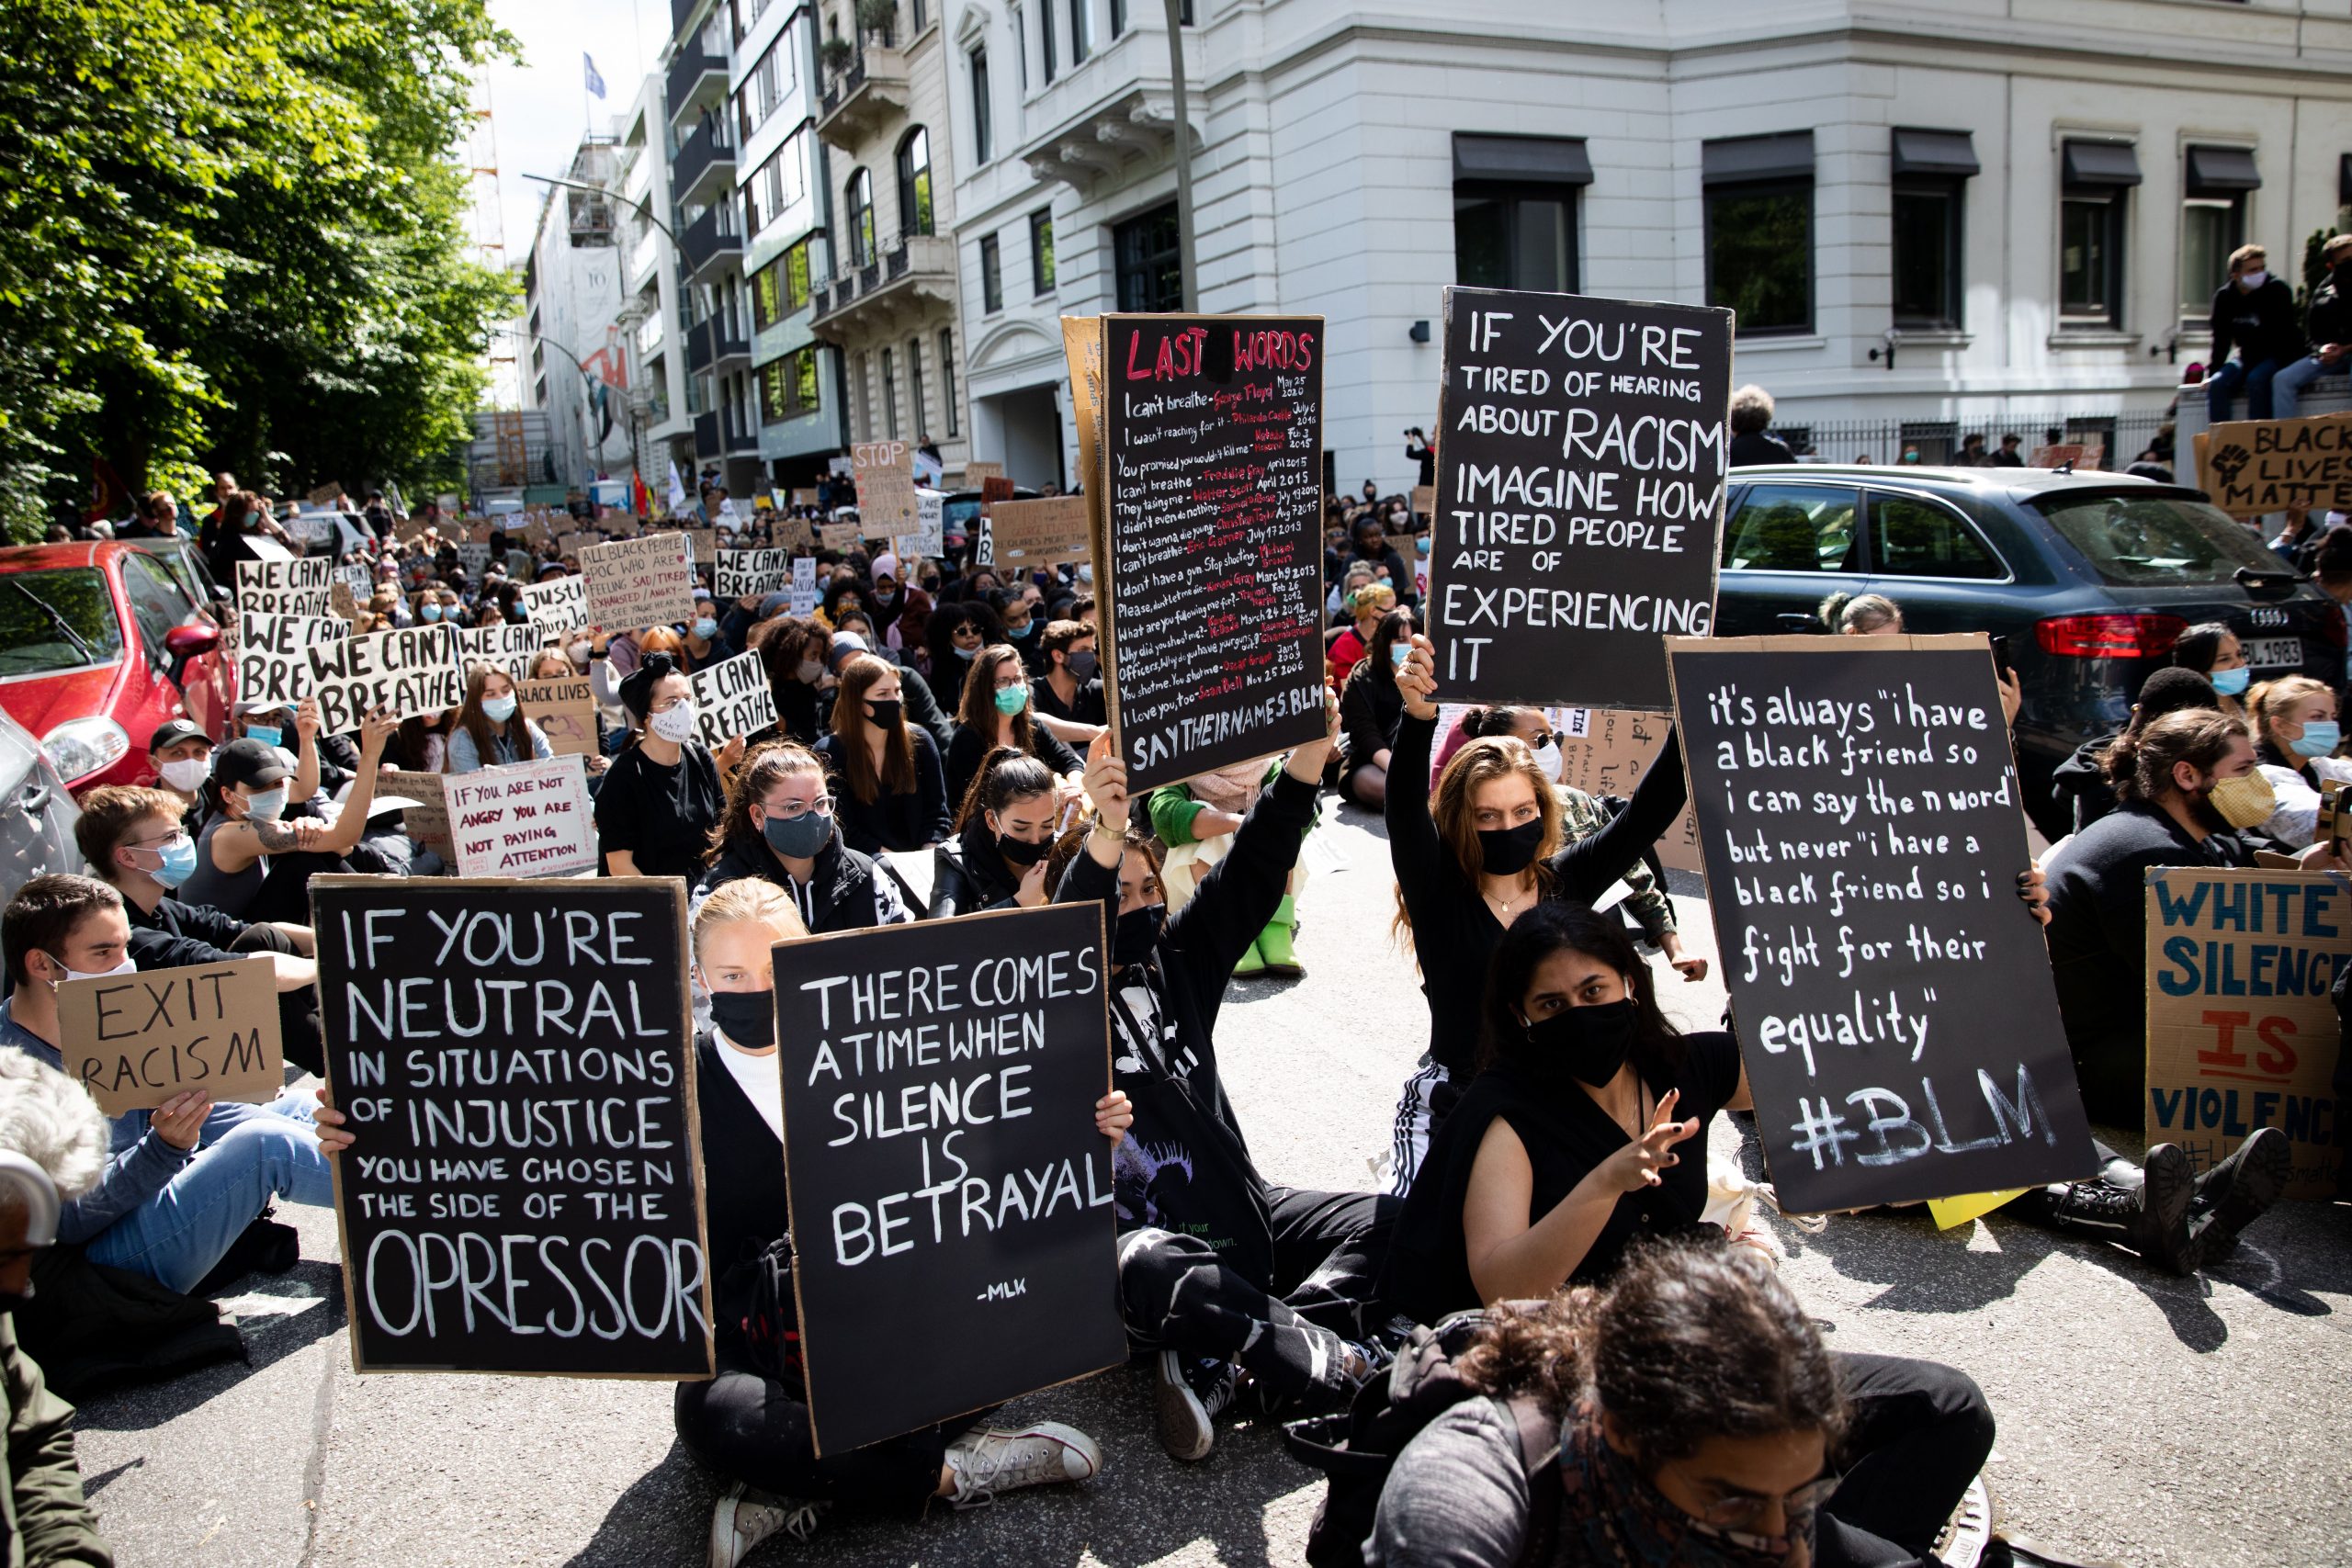 Teilnehmer einer Demonstration gegen Rassismus und Polizeigewalt protestierten im Juni 2020 vor dem US Konsulat am Alsterufer.